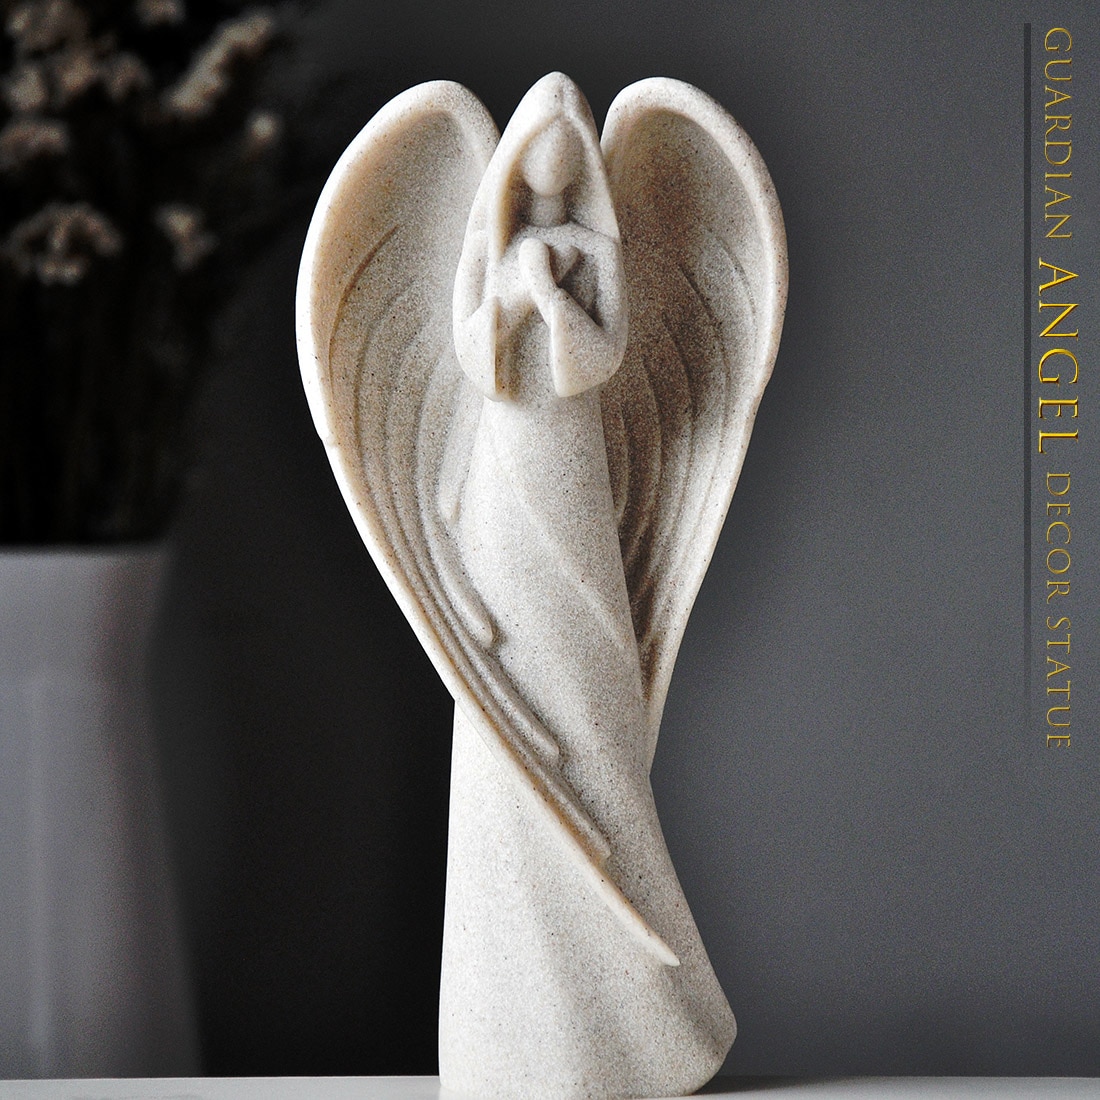 Europese Guardian Angel Sculptuur Decoratie Woonkamer Studie Creatieve Standbeeld Ambachten Retro Woonaccessoires Gebed Angel